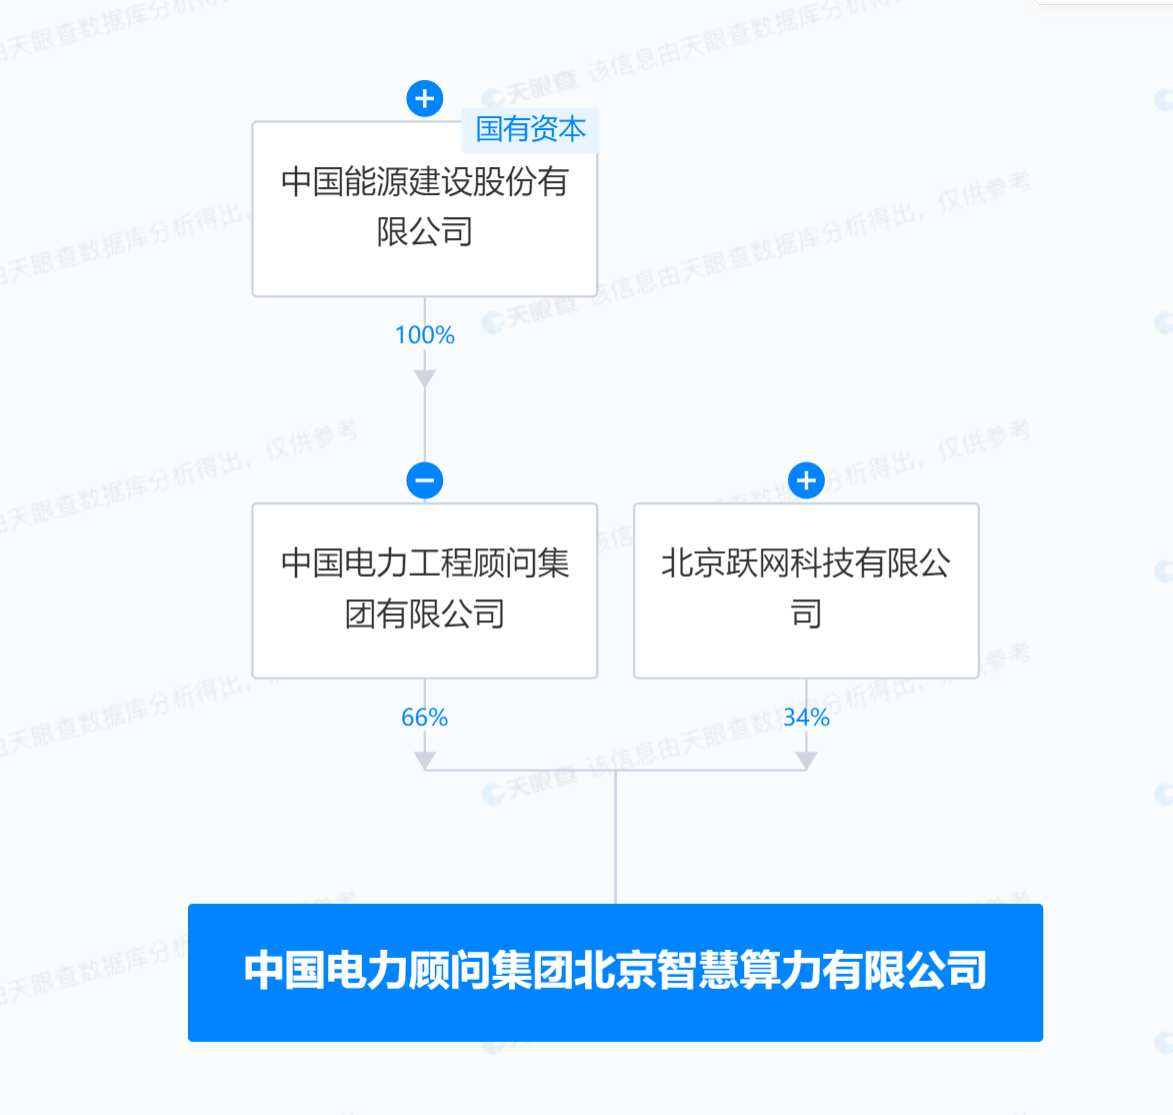 中国电力顾问集团等成立智慧算力公司